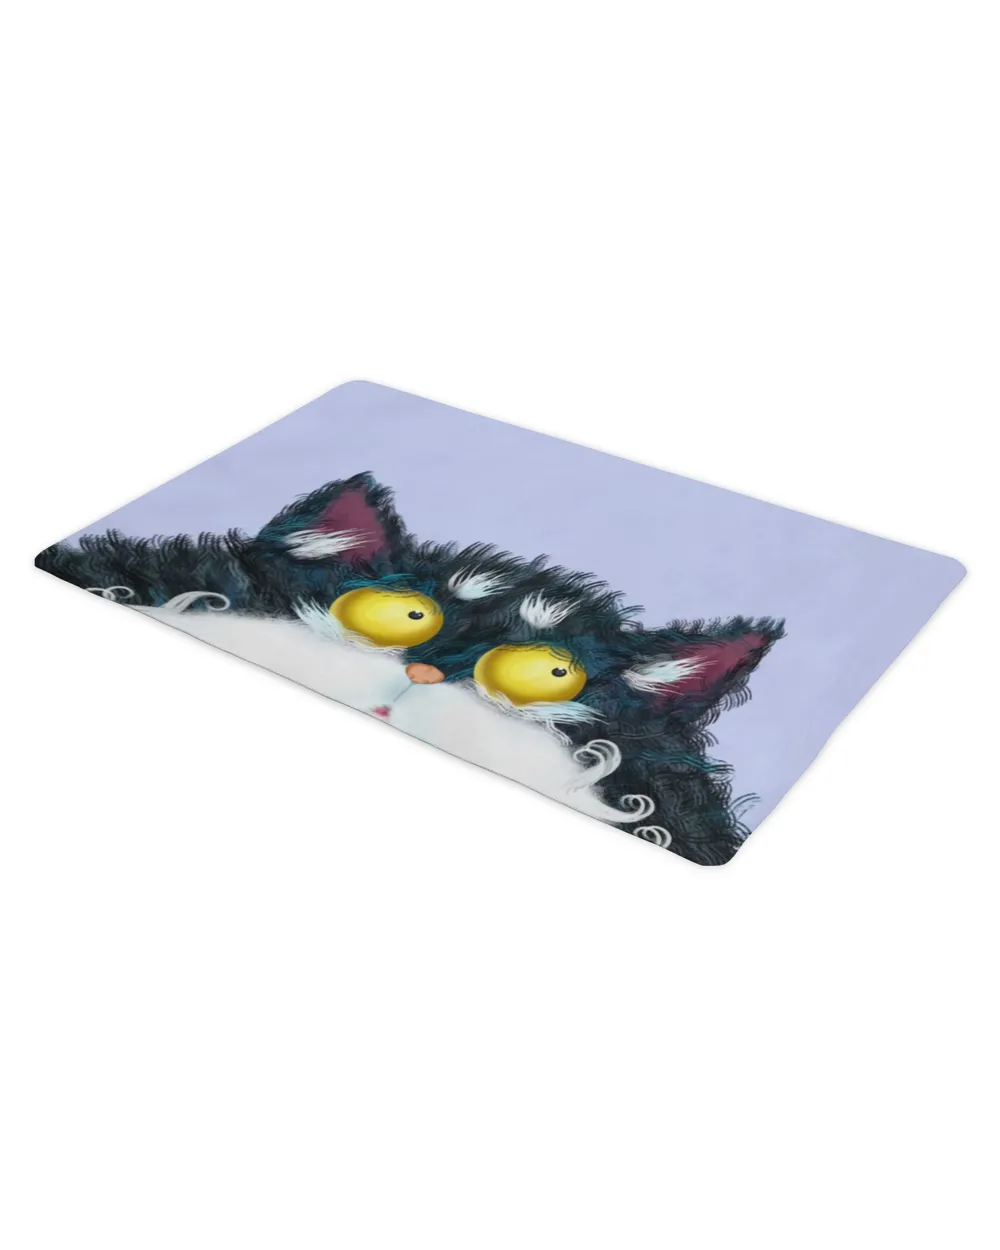 Funny Fluffy Cat Doormat HOD300323DRM8